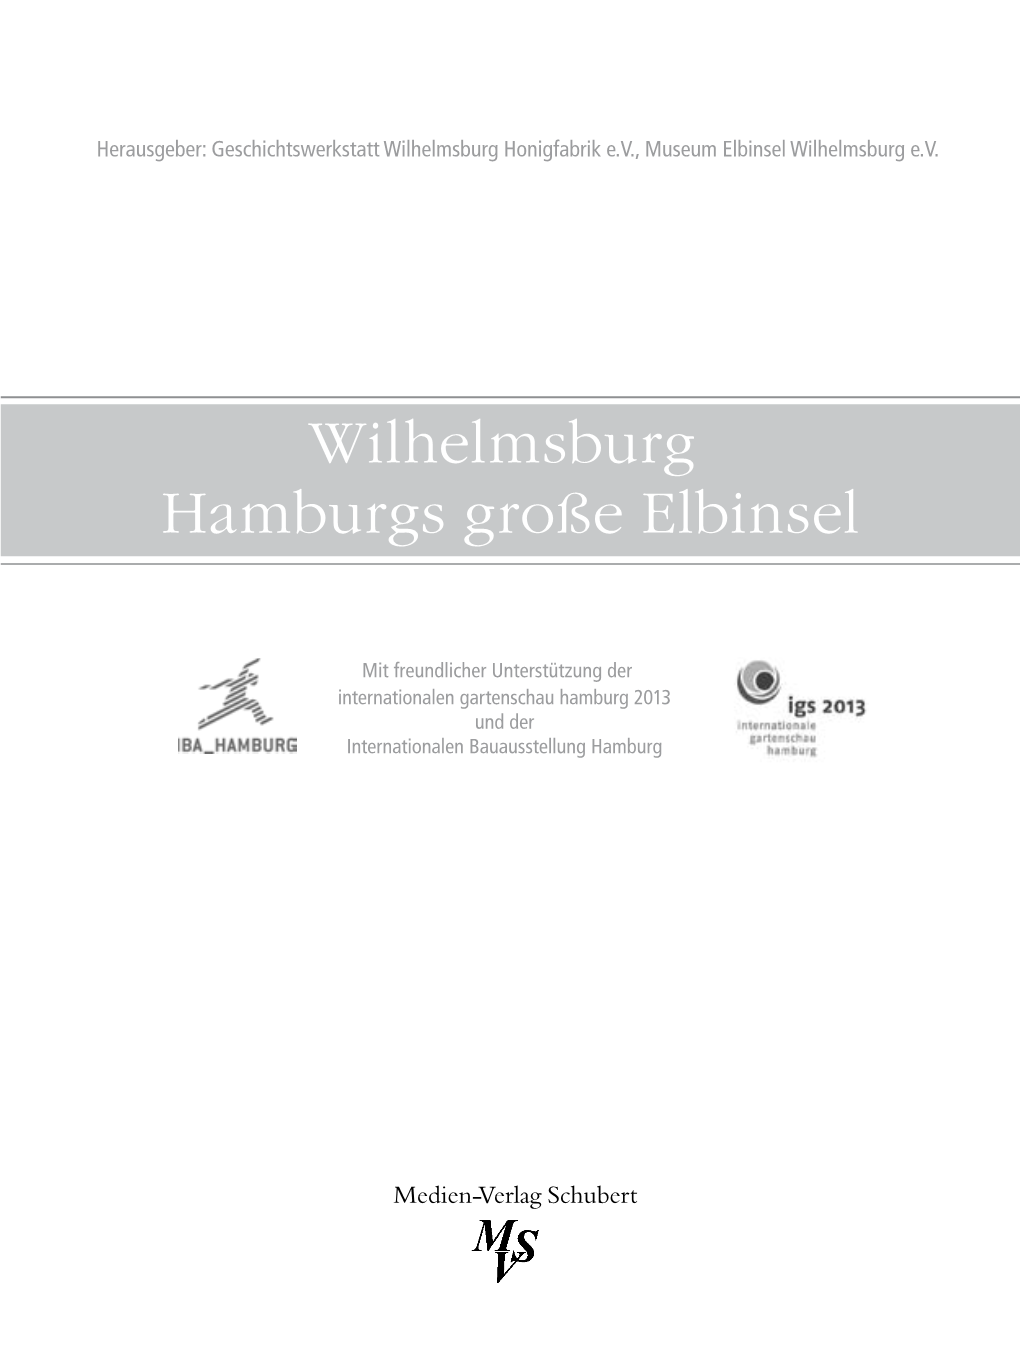 Wilhelmsburg Hamburgs Große Elbinsel